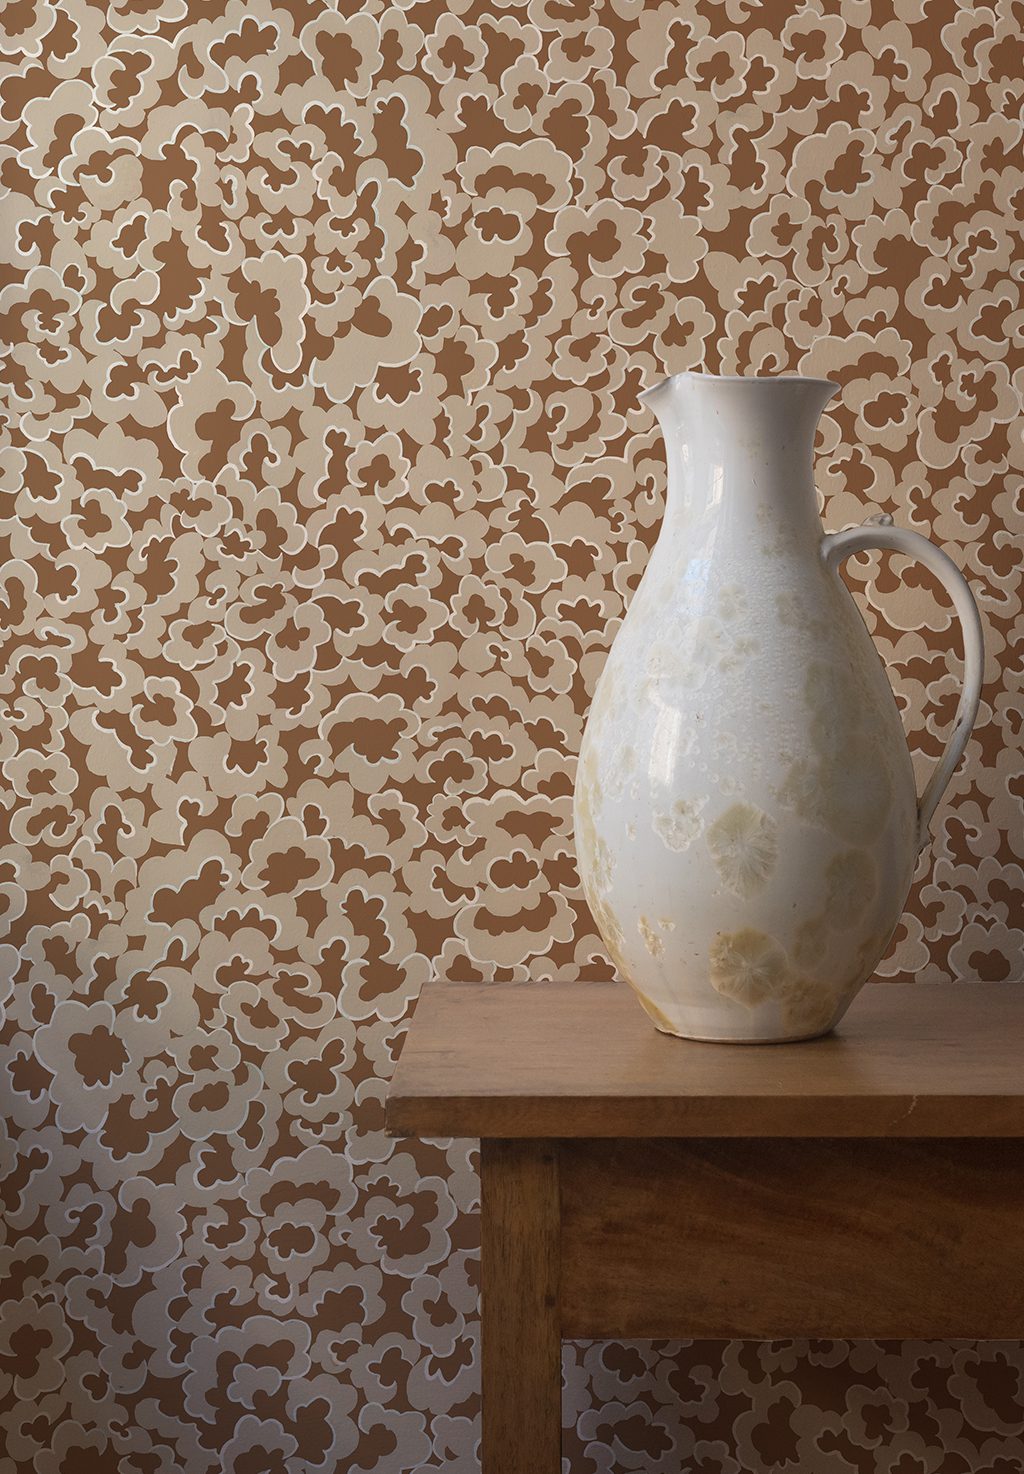 Josephine-Munsey-wallpaper-clouds-small-pattern-repeat-tonal-stylized-alma-brown